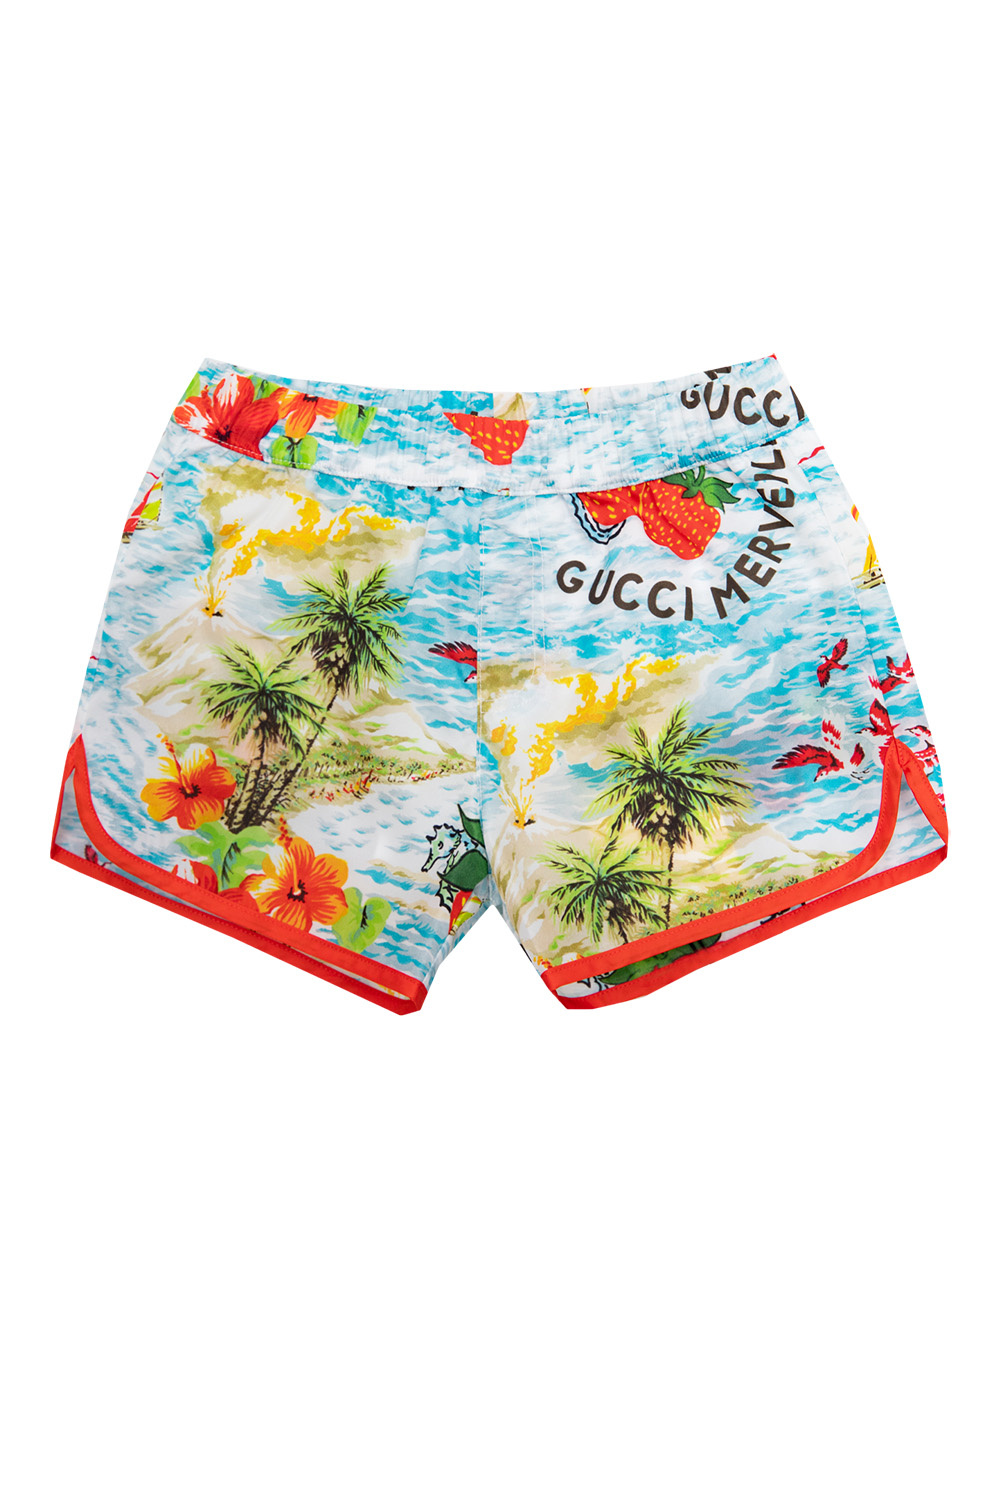 Gucci Man Multicolor Swimwear